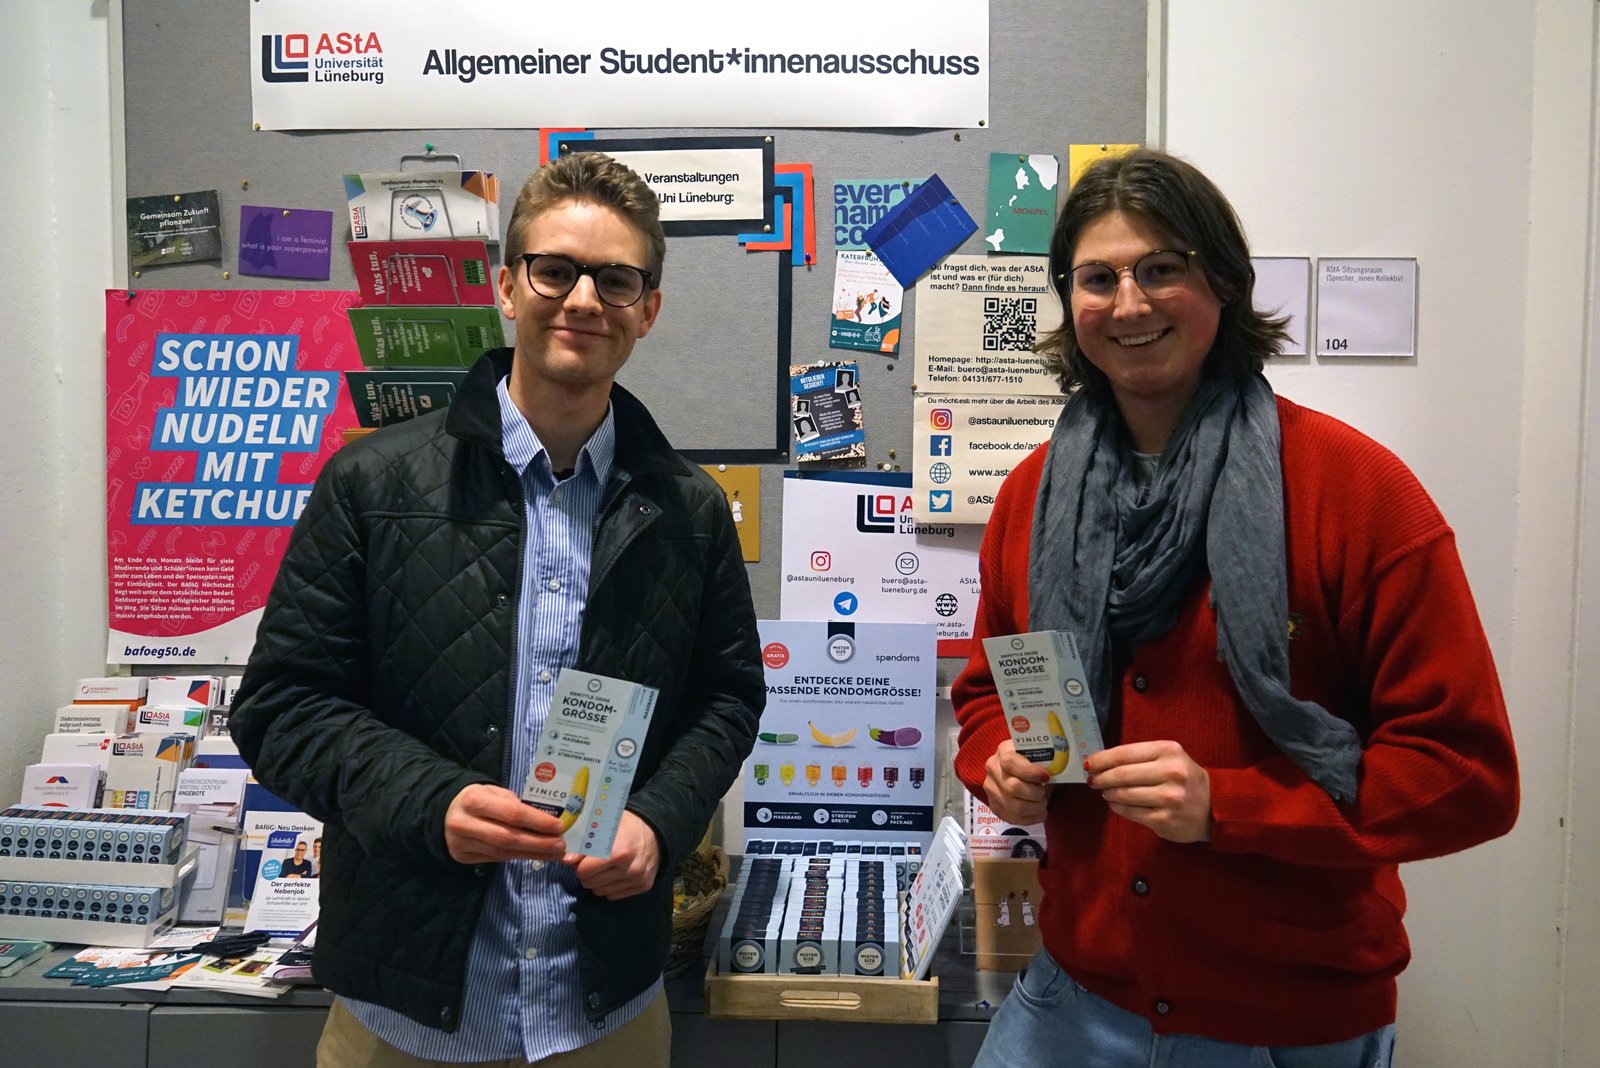 Луис из Spondoms (слева) открывает бесплатный автомат по раздаче презервативов вместе с Максом из AStA университета Leuphana University Lüneburg (справа).